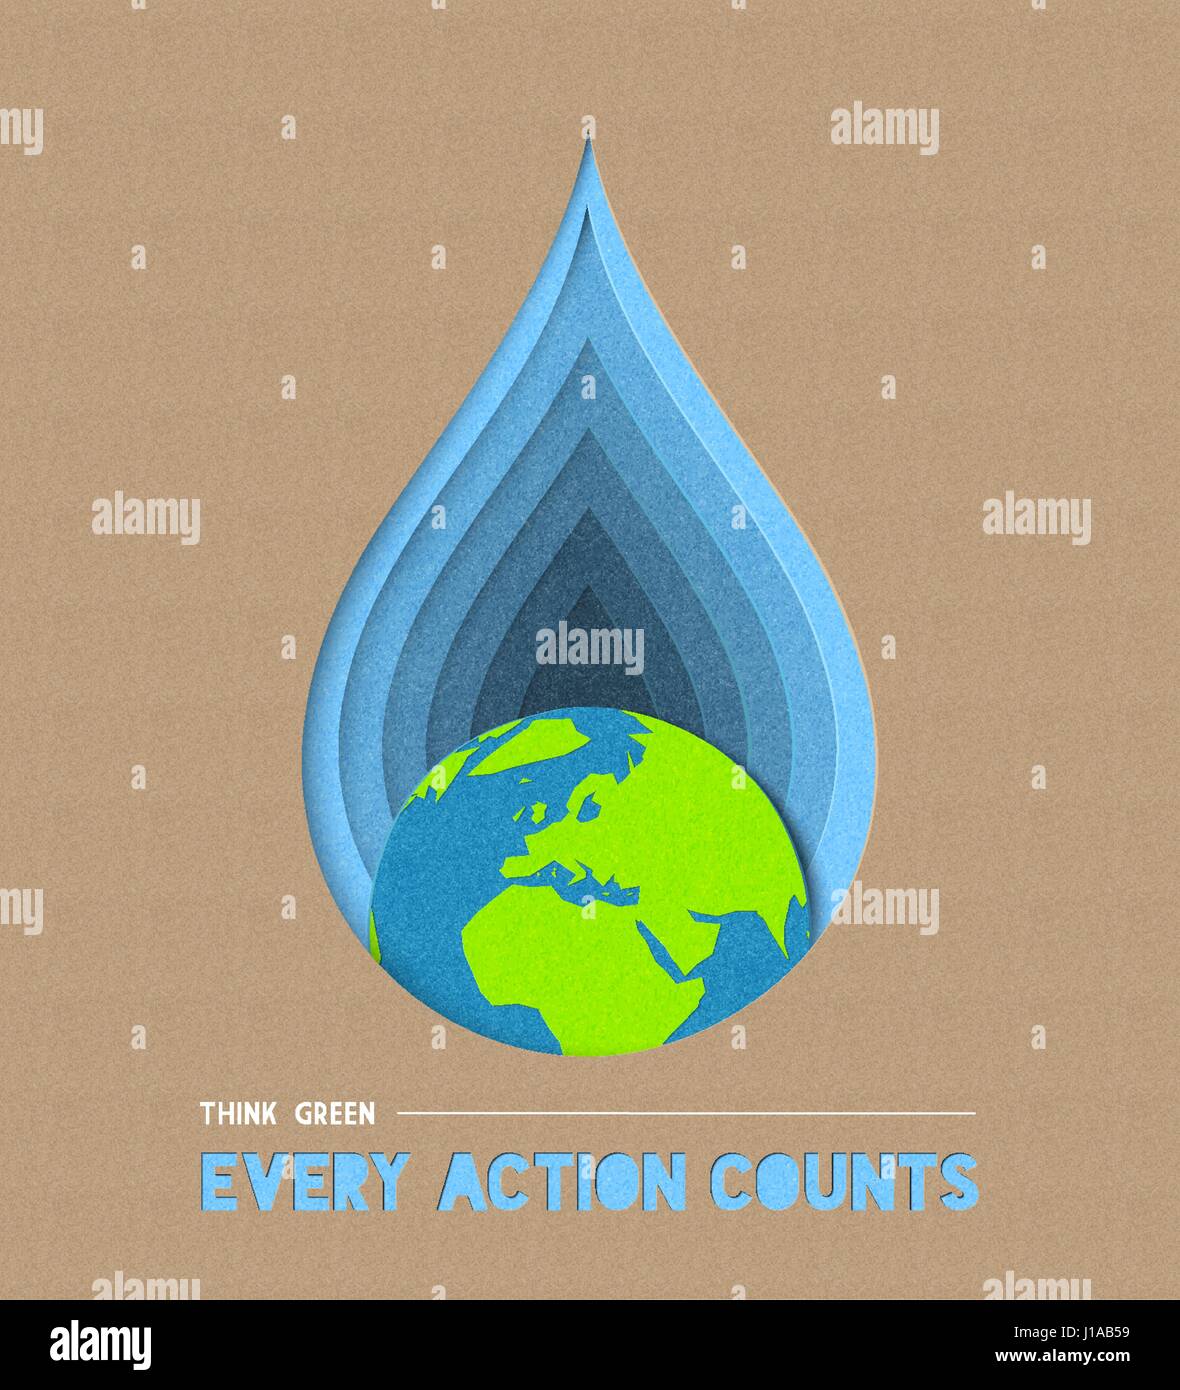 Erde Scherenschnitt Tag Konzept Illustration für Wasser und Umwelt Pflege mit leistungsstarken Angebot. EPS10 Vektor. Stock Vektor